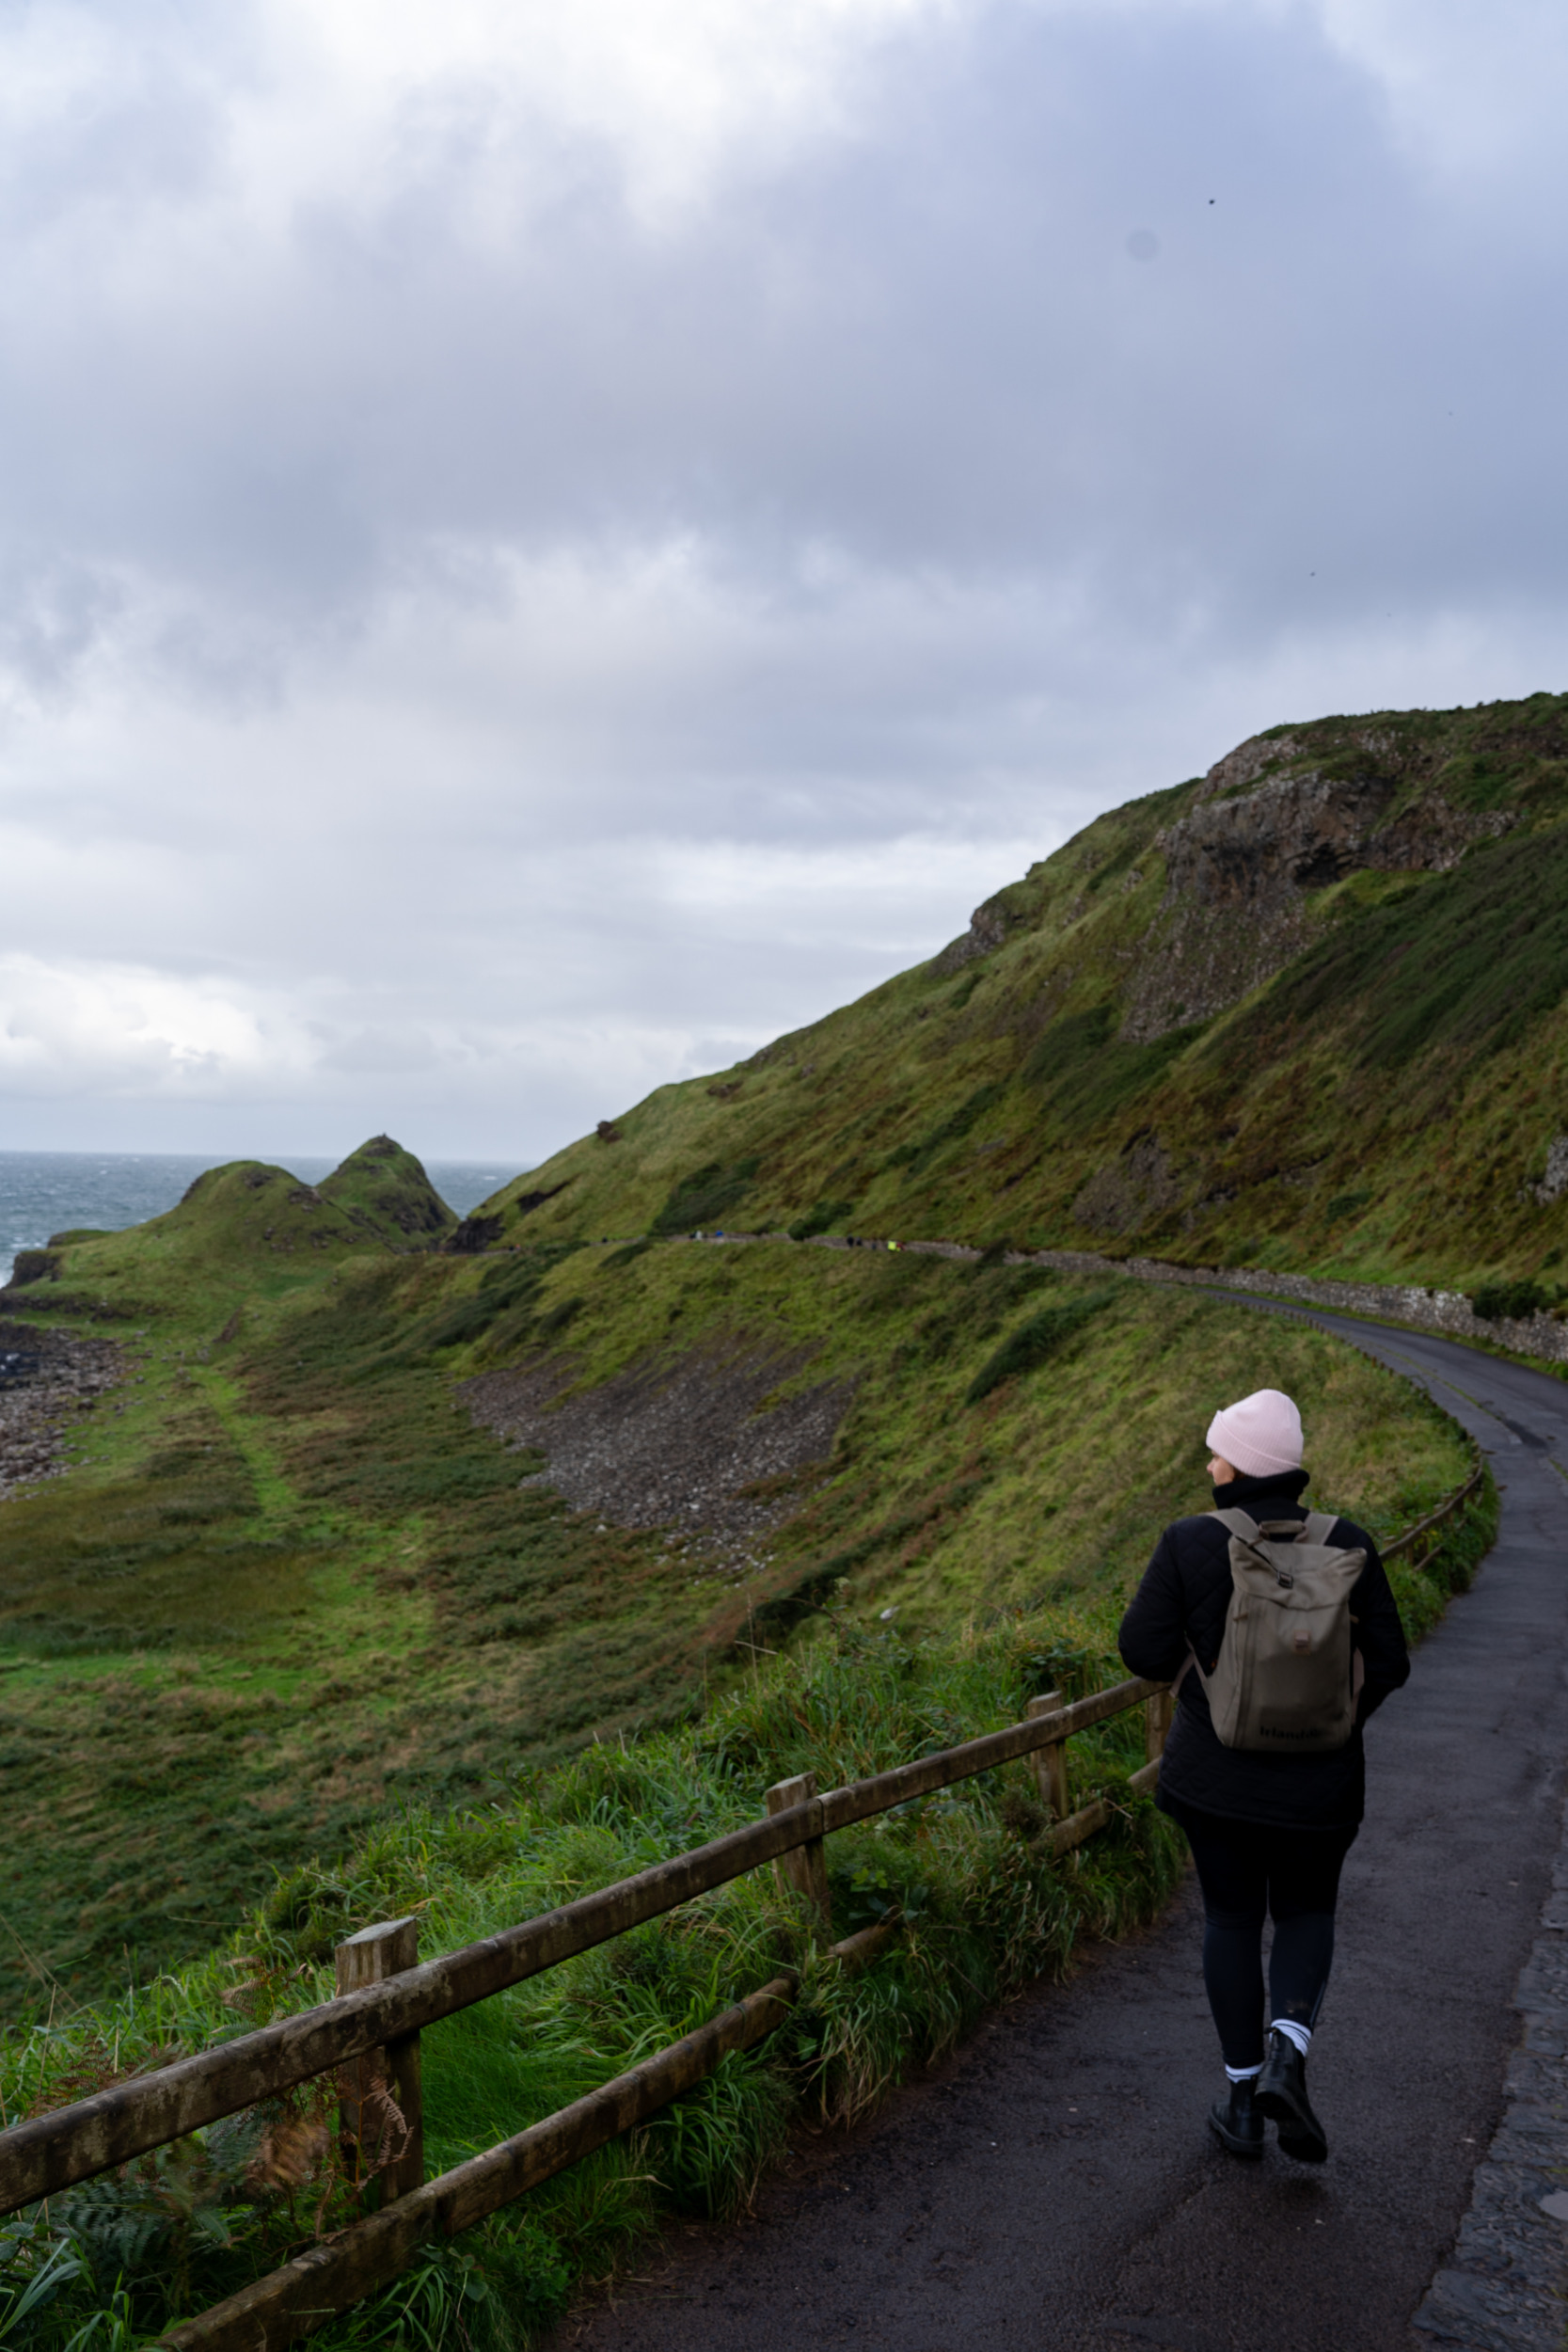 Der Giant's Causeway ist eine der spektakulärsten Nordirland-Sehenswürdigkeiten